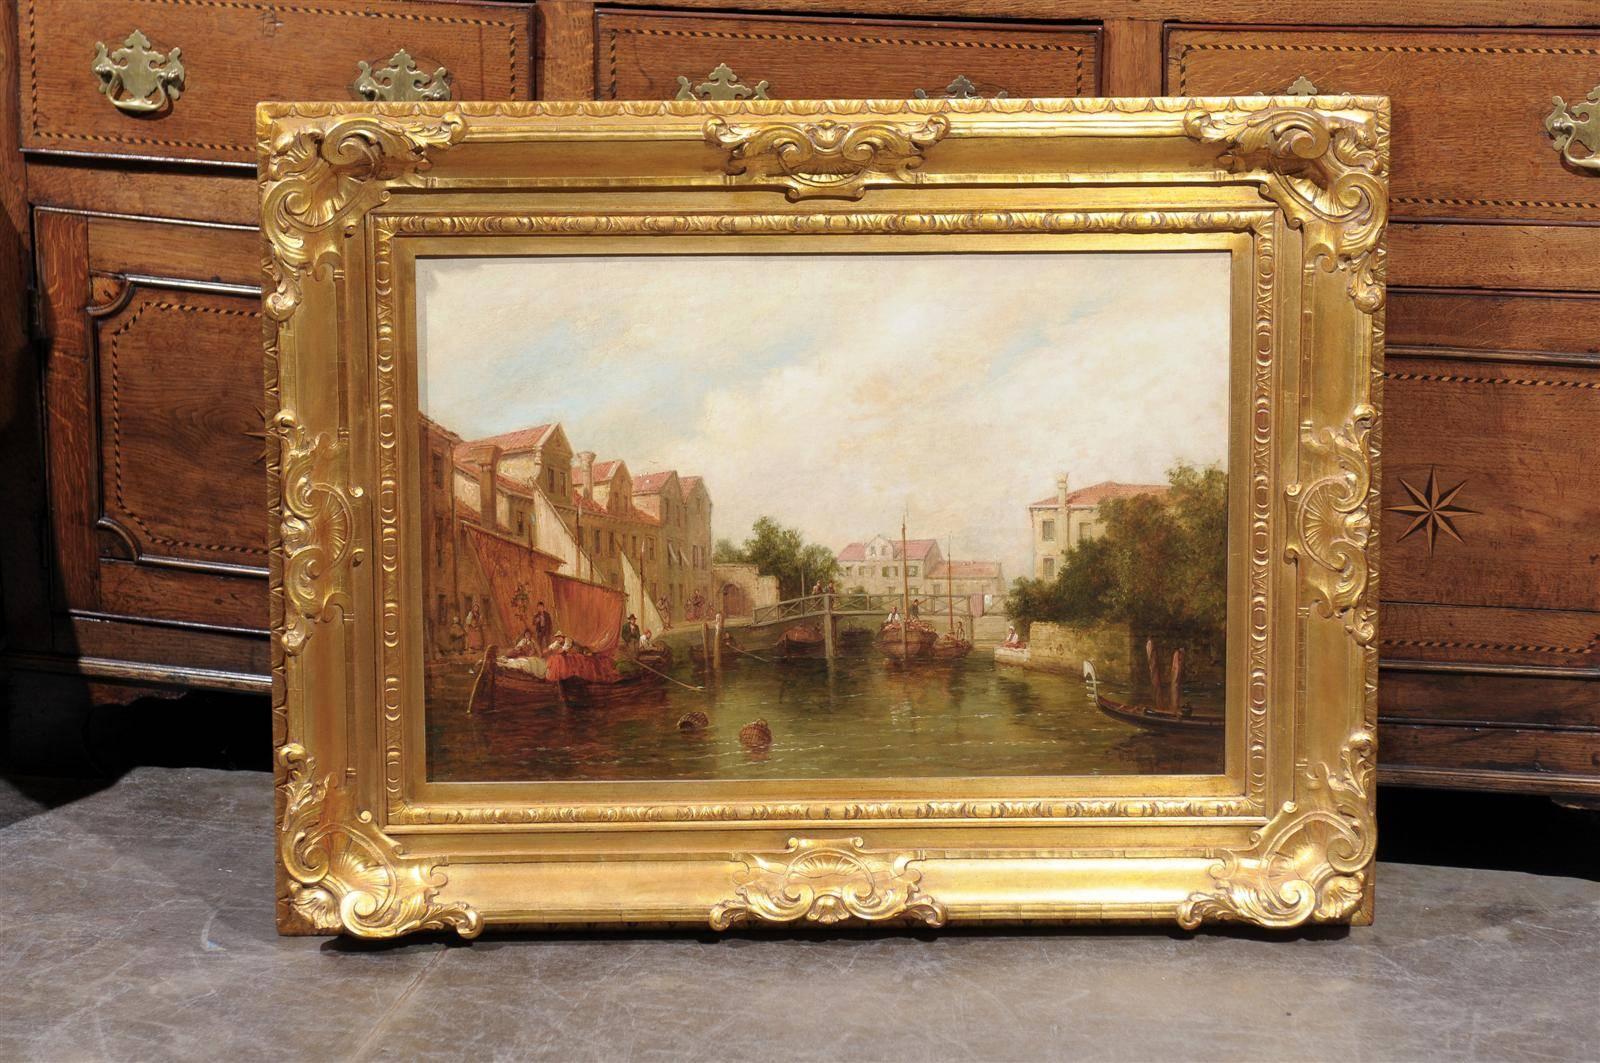 Cette peinture à l'huile sur toile de la fin du 19e siècle dépeint une scène sereine. Au centre de la composition se trouve un canal très fréquenté, avec un pont en bois en arrière-plan. Le long du canal, des piétons, dont une mère et ses deux